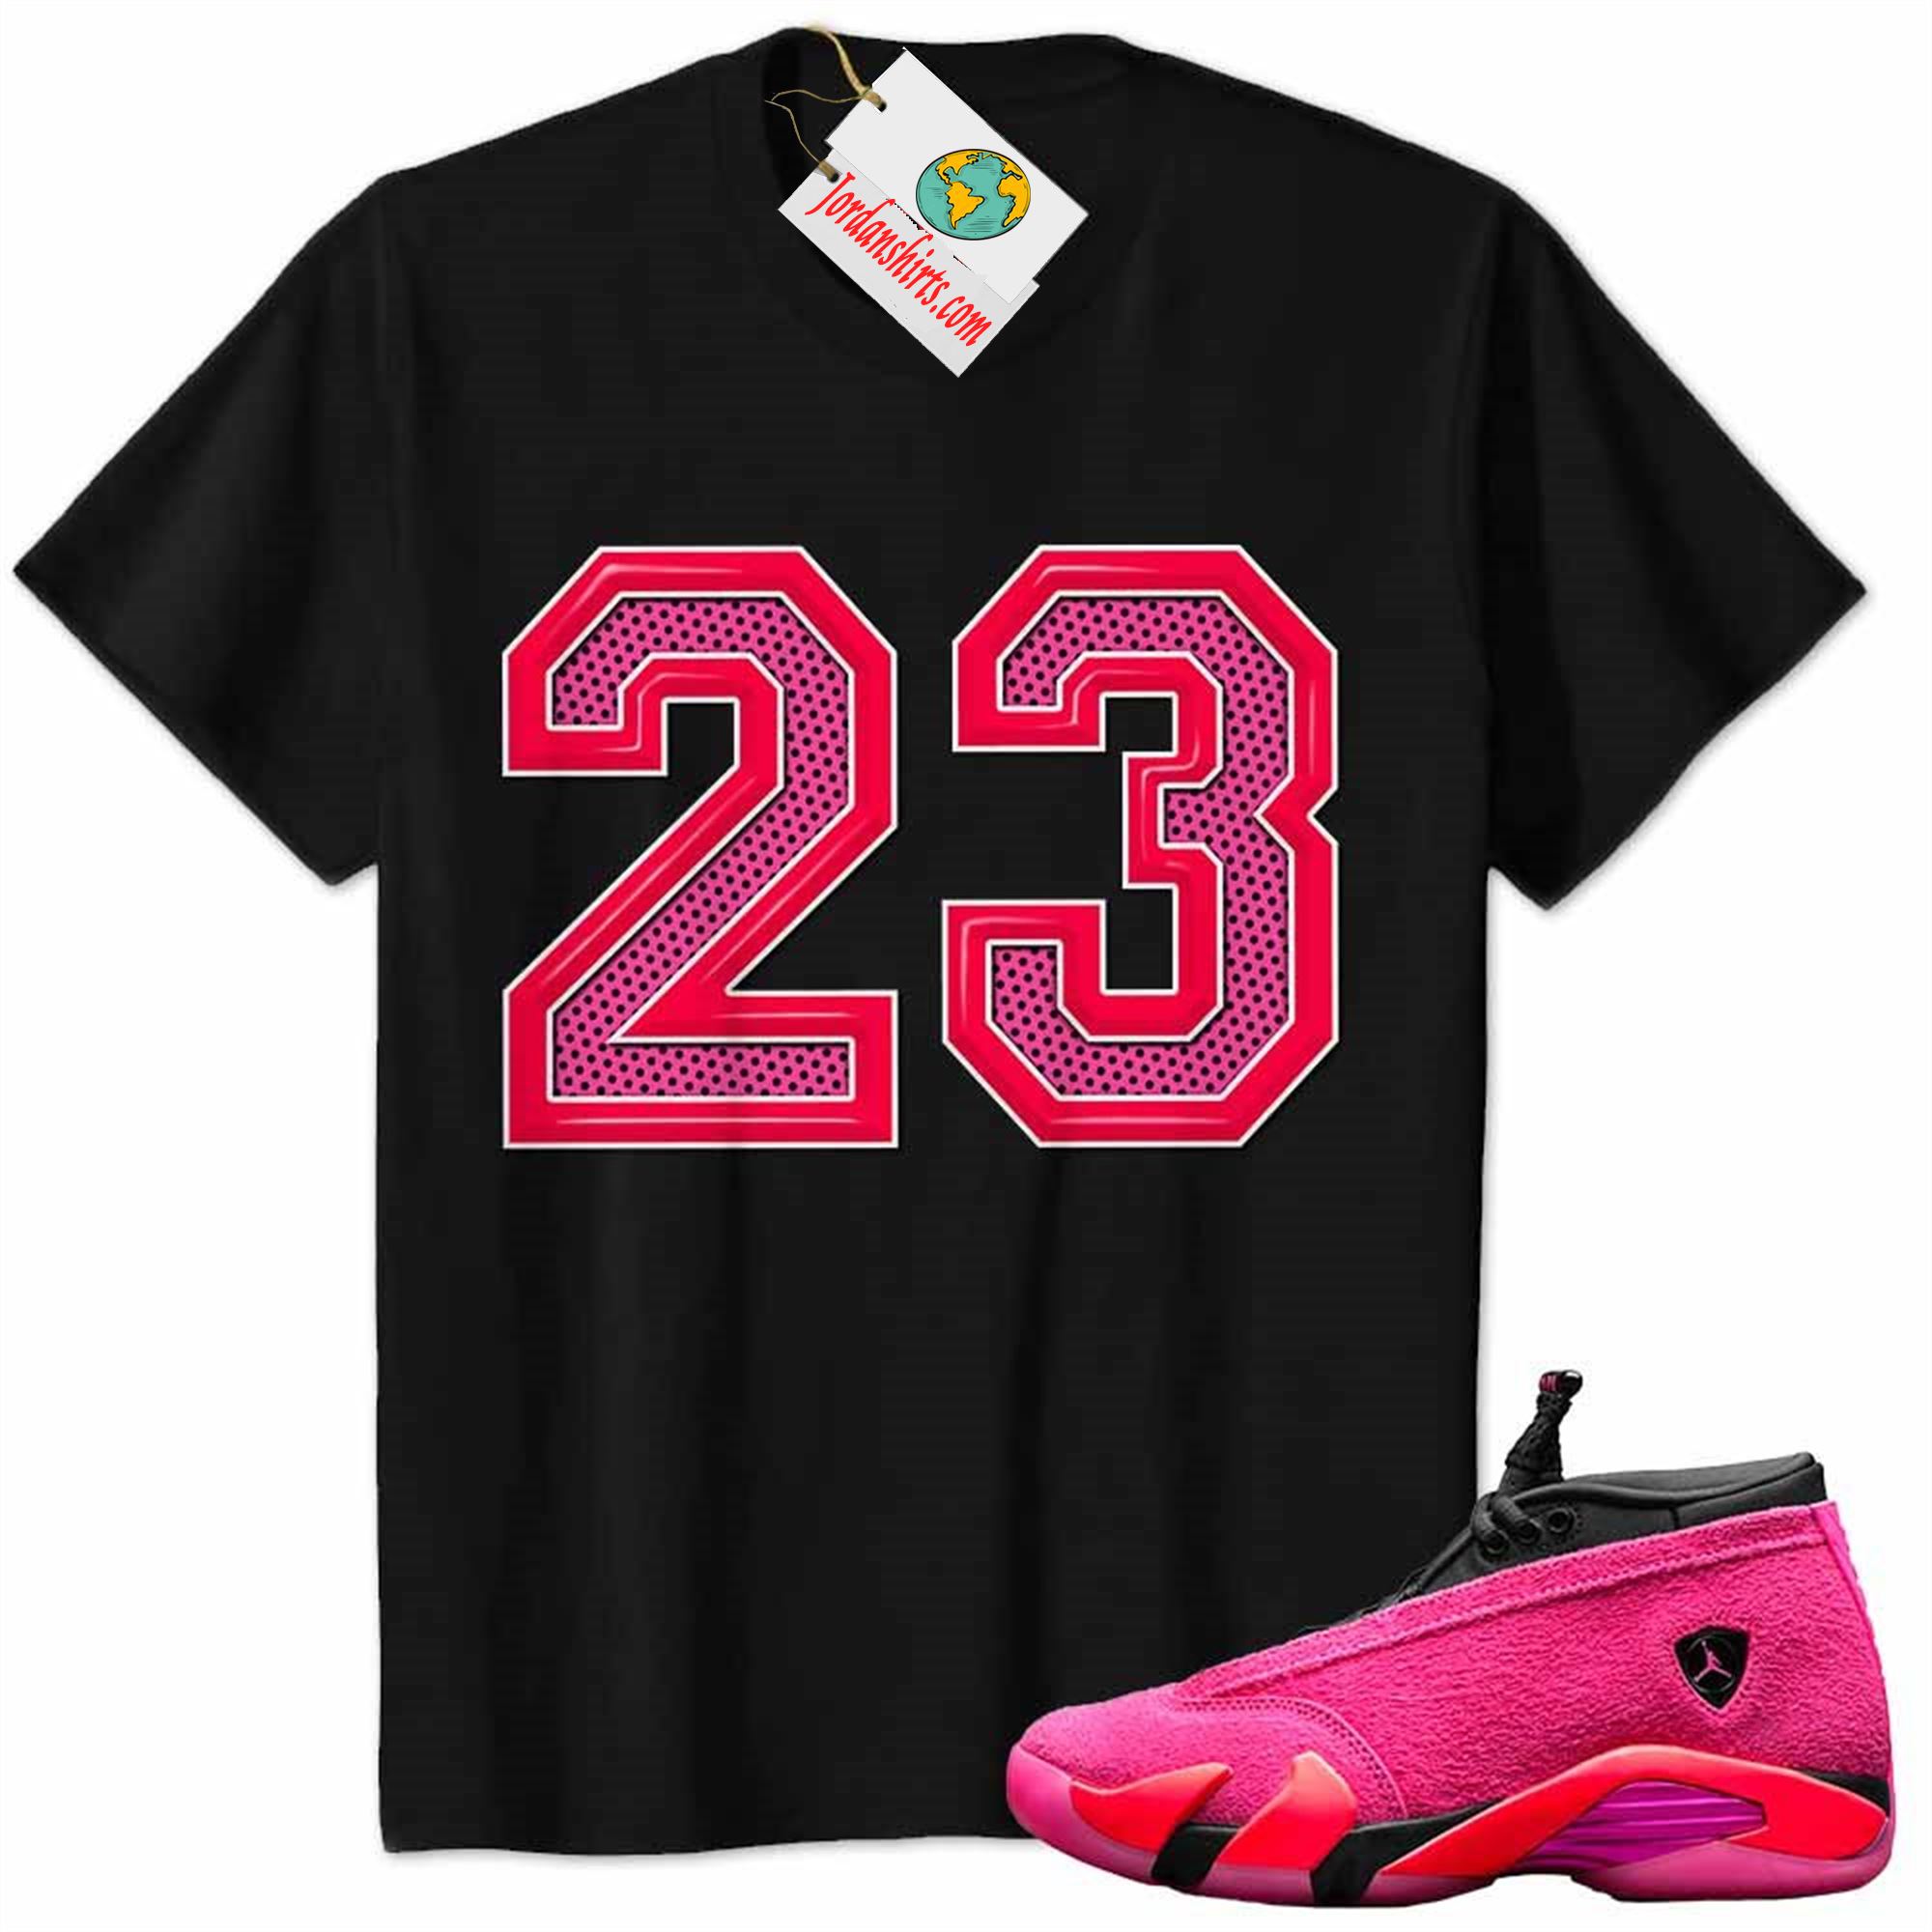 Jordan 14 Shirt, Jordan 14 Wmns Shocking Pink Shirt Michael Jordan Number 23 Black Size Up To 5xl